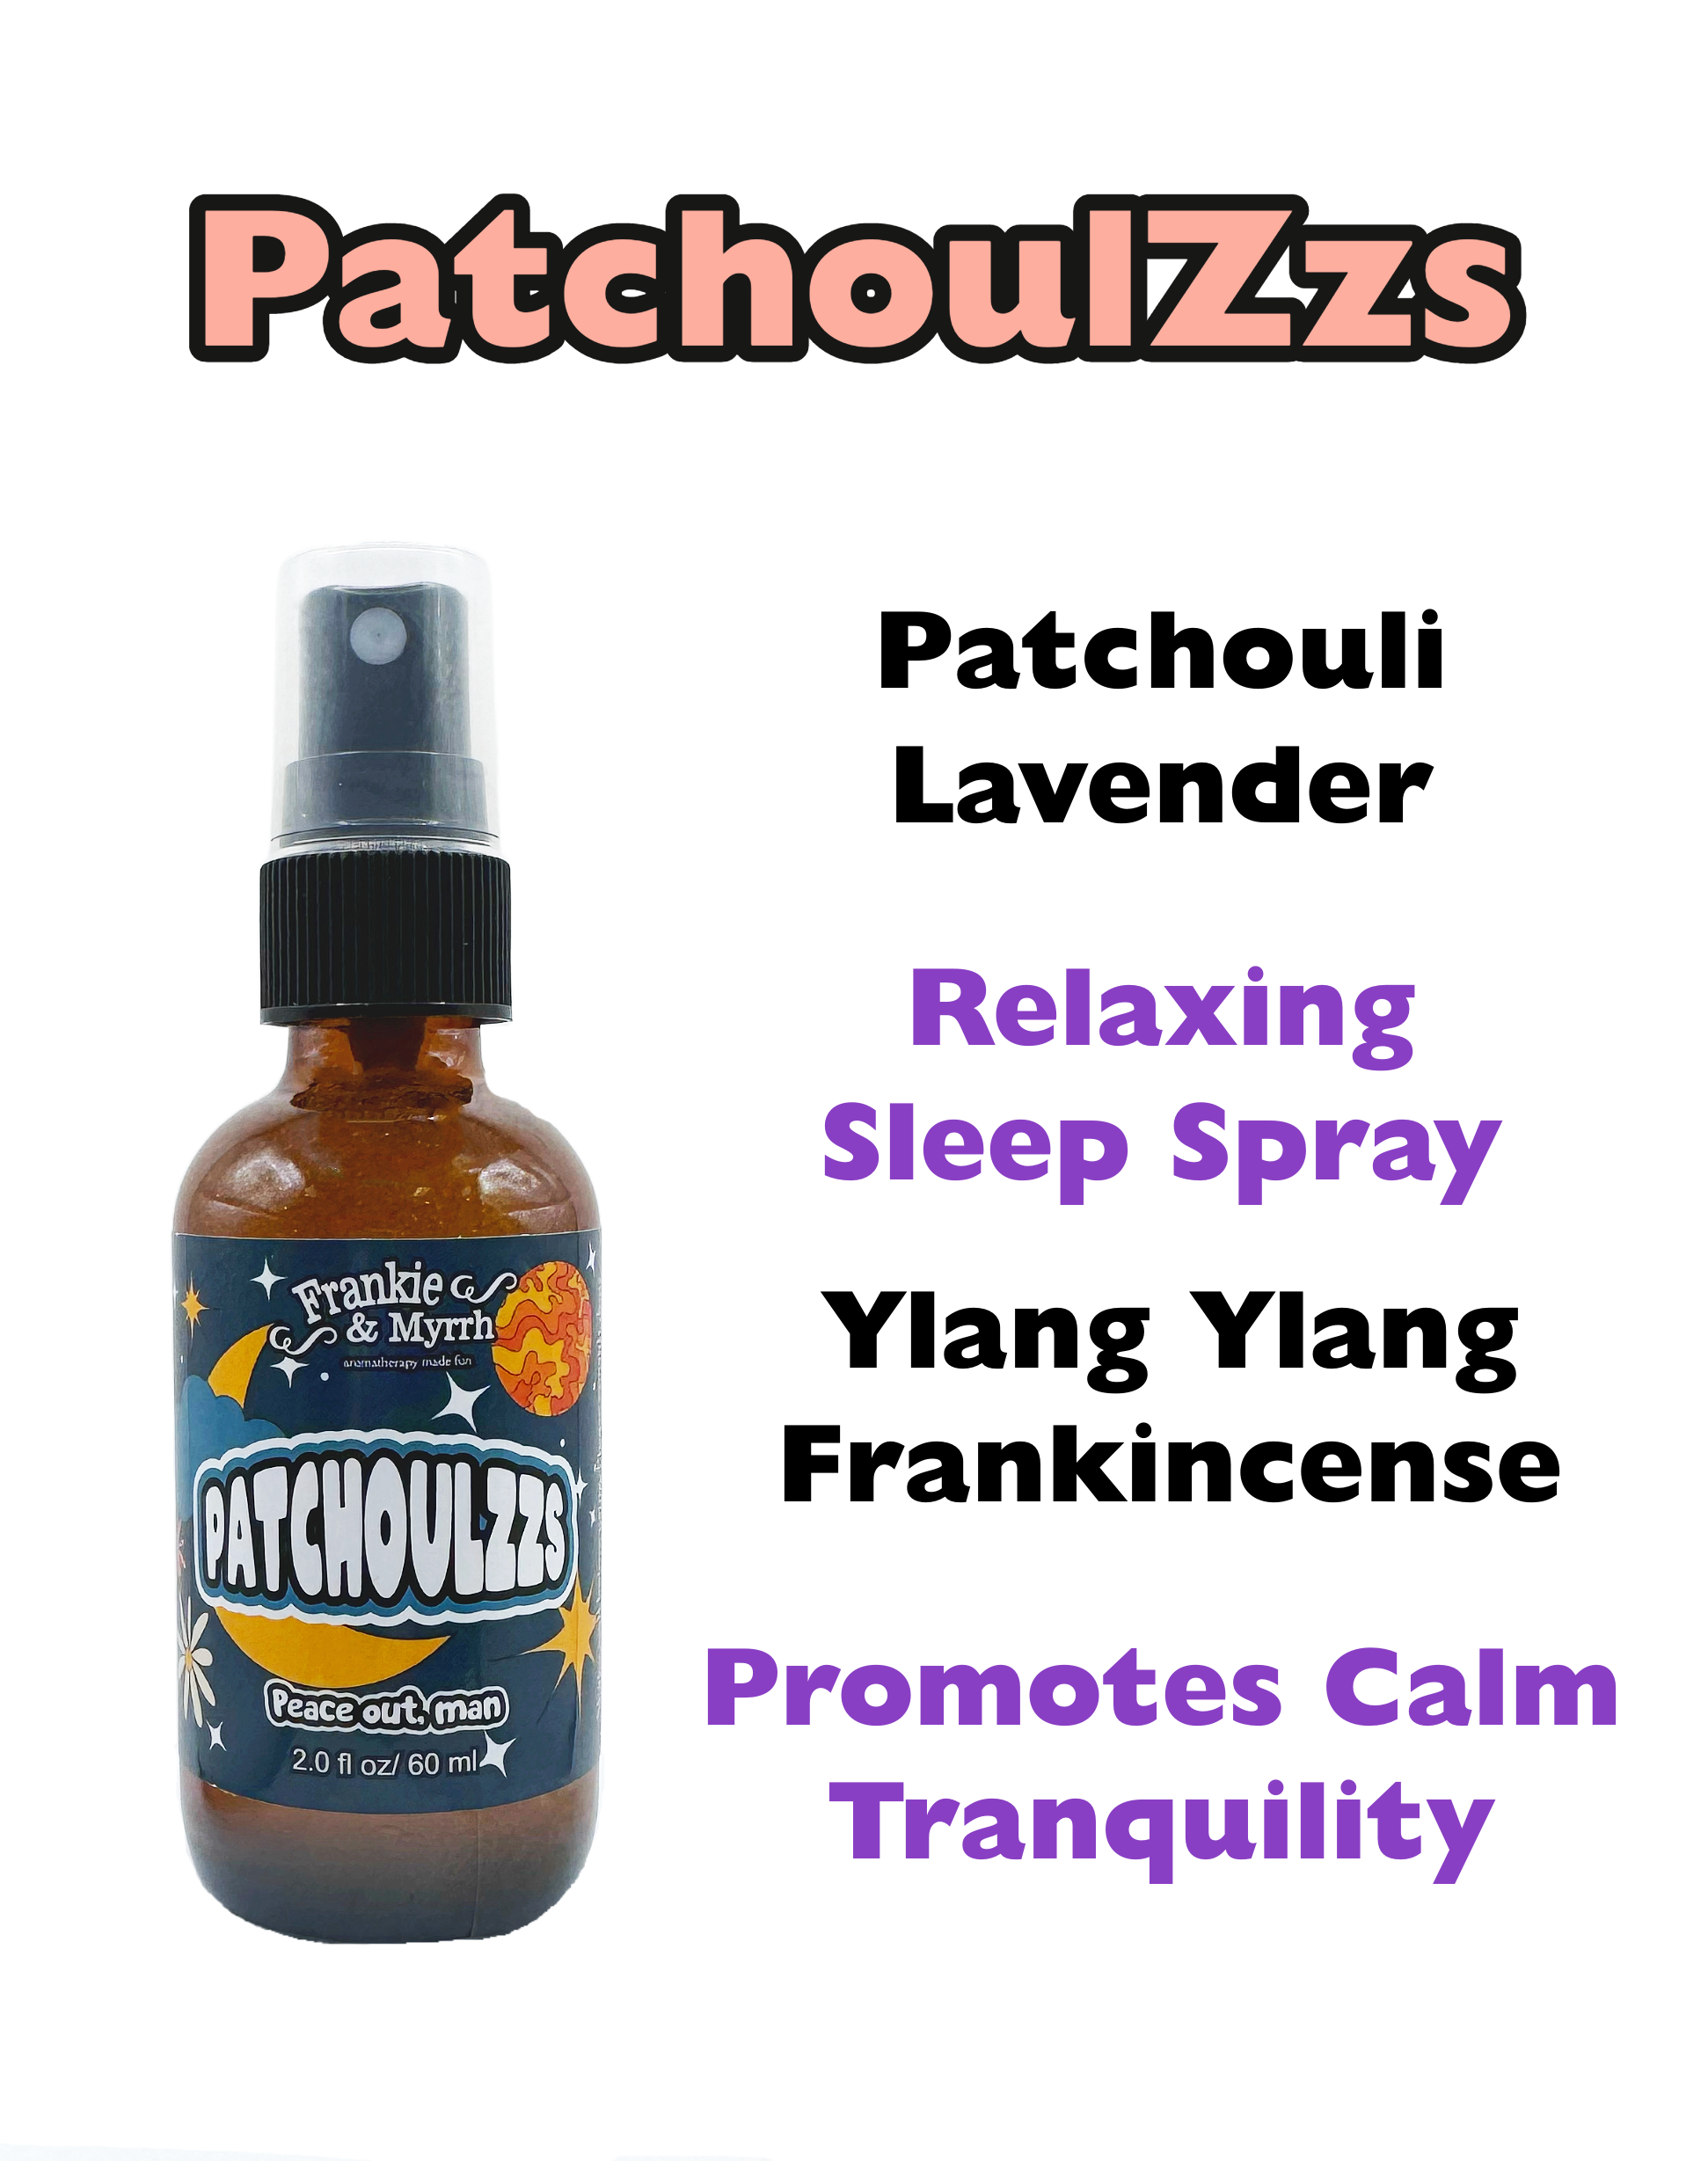 PatchoulZzs | Patchouli & Lavender Spray